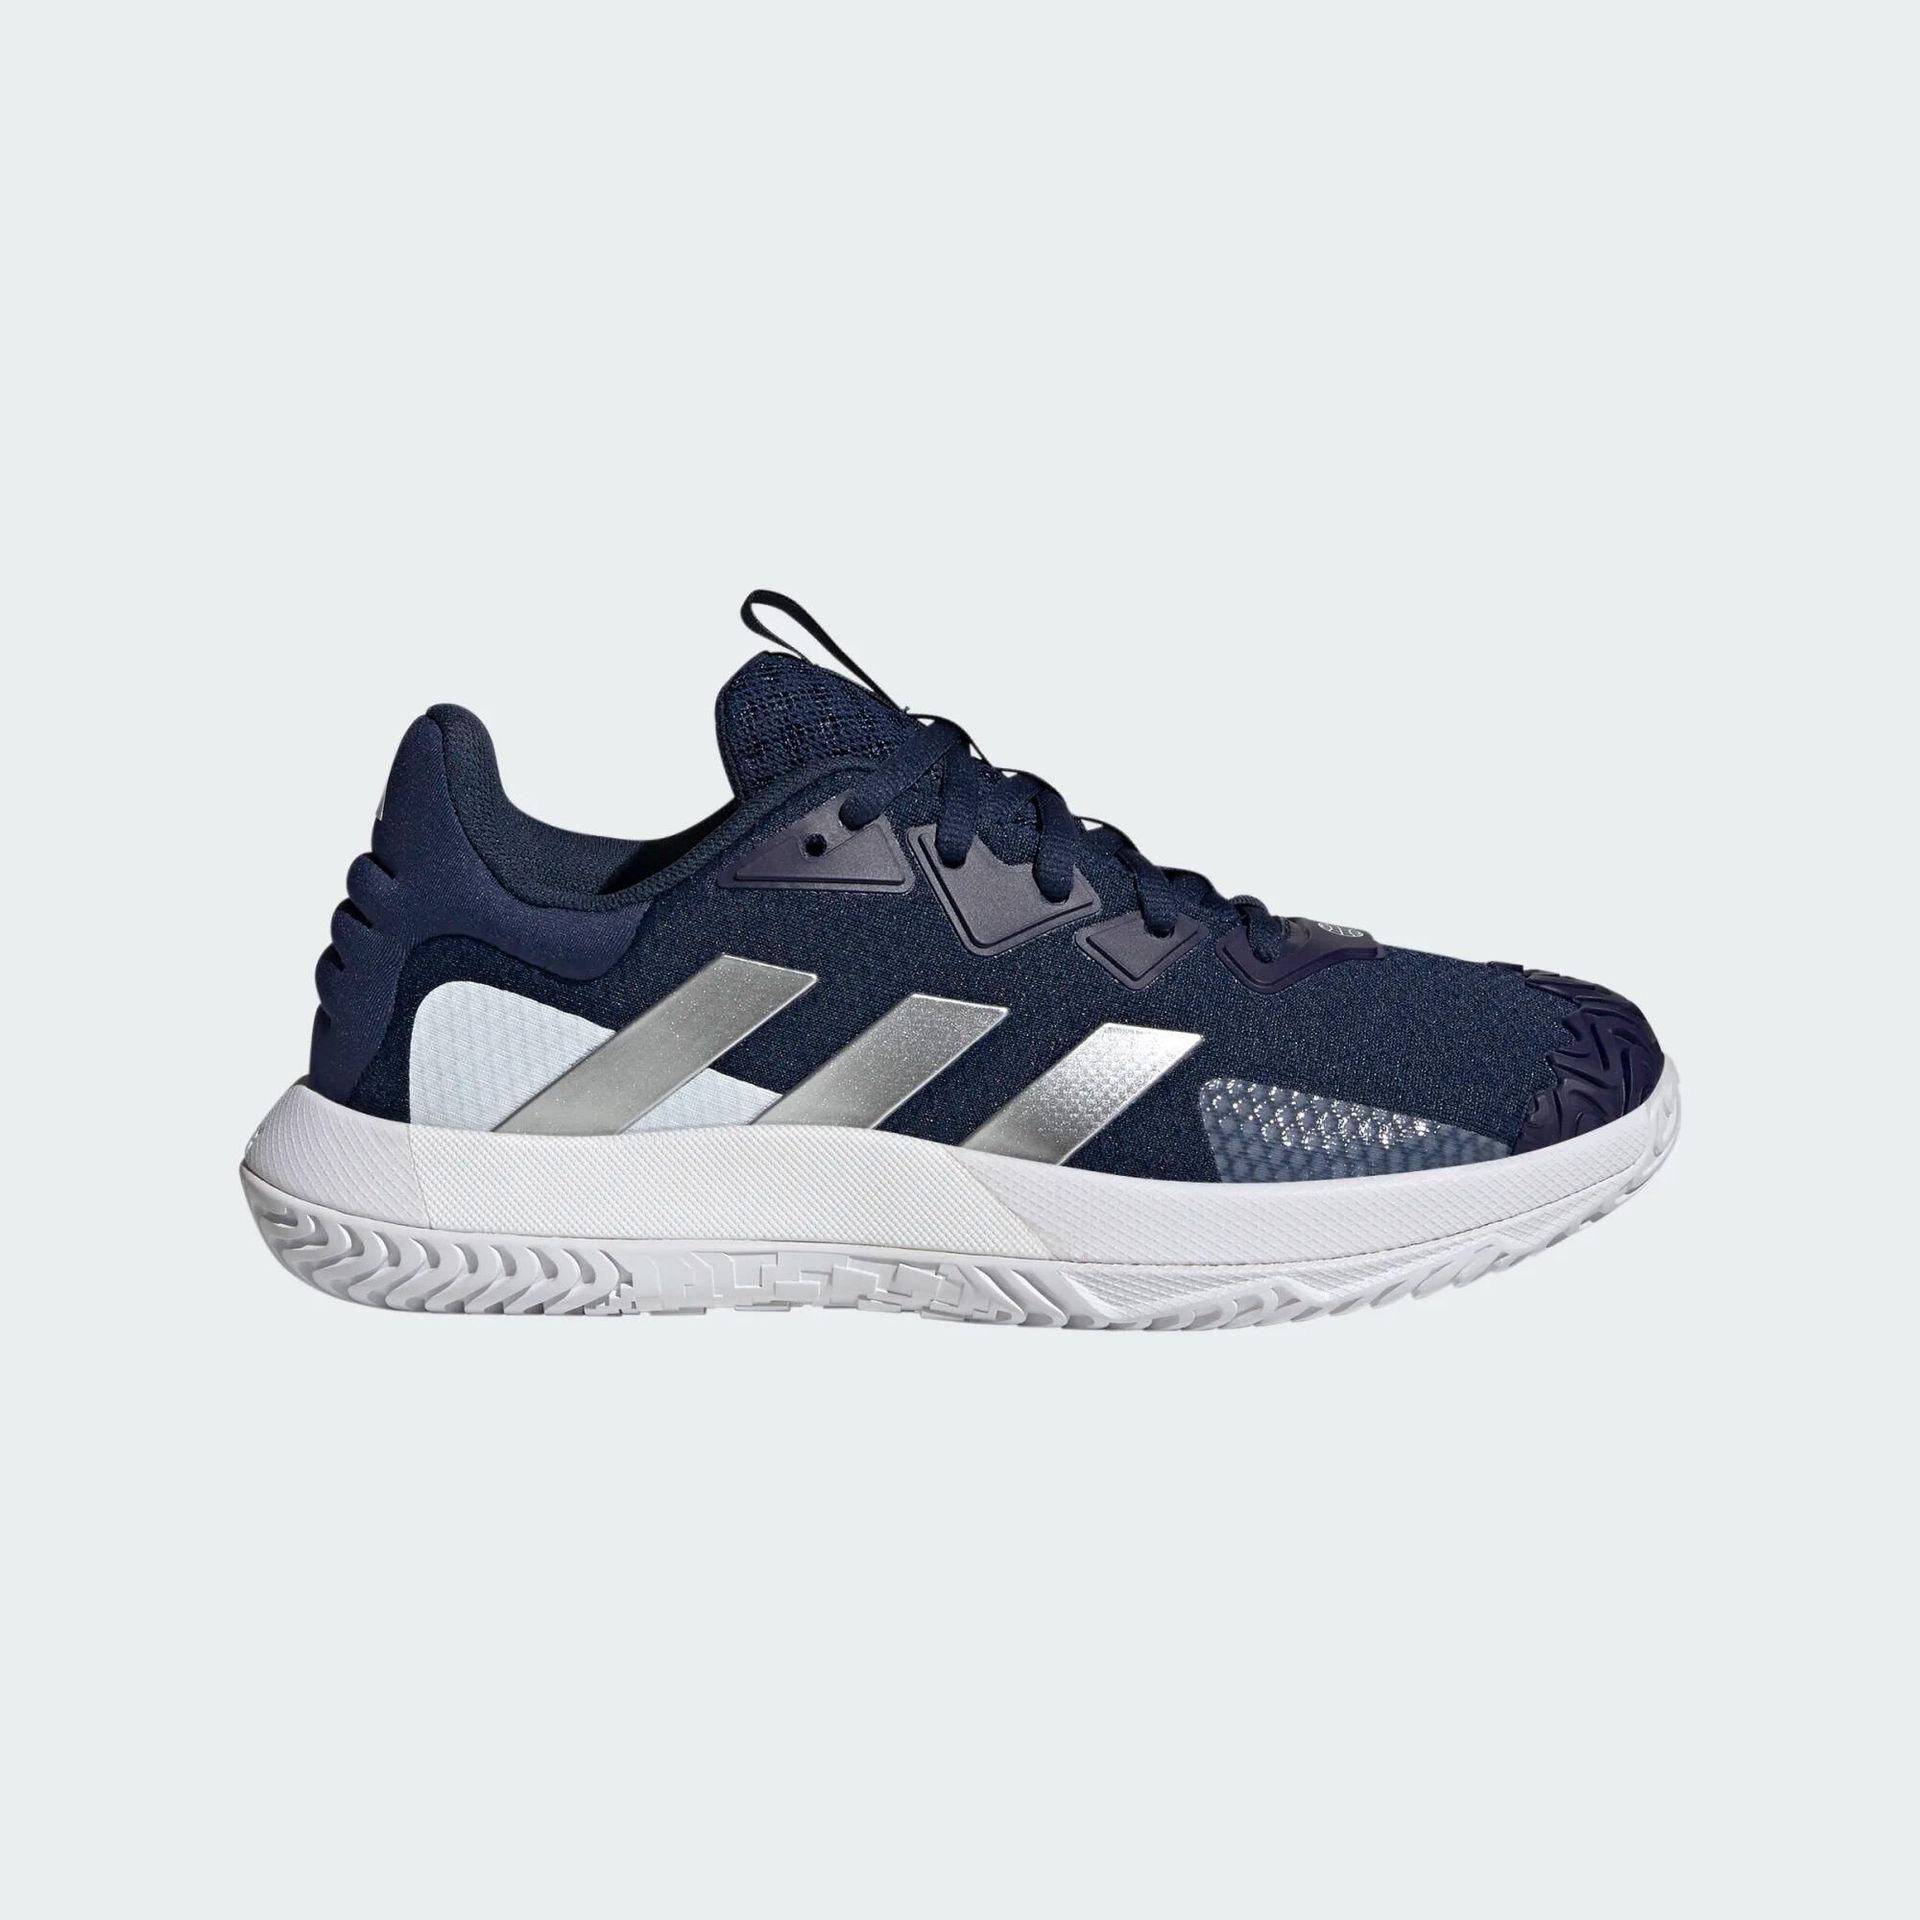 Buty tenisowe męskie Adidas Solematch Control na każdą nawierzchnię